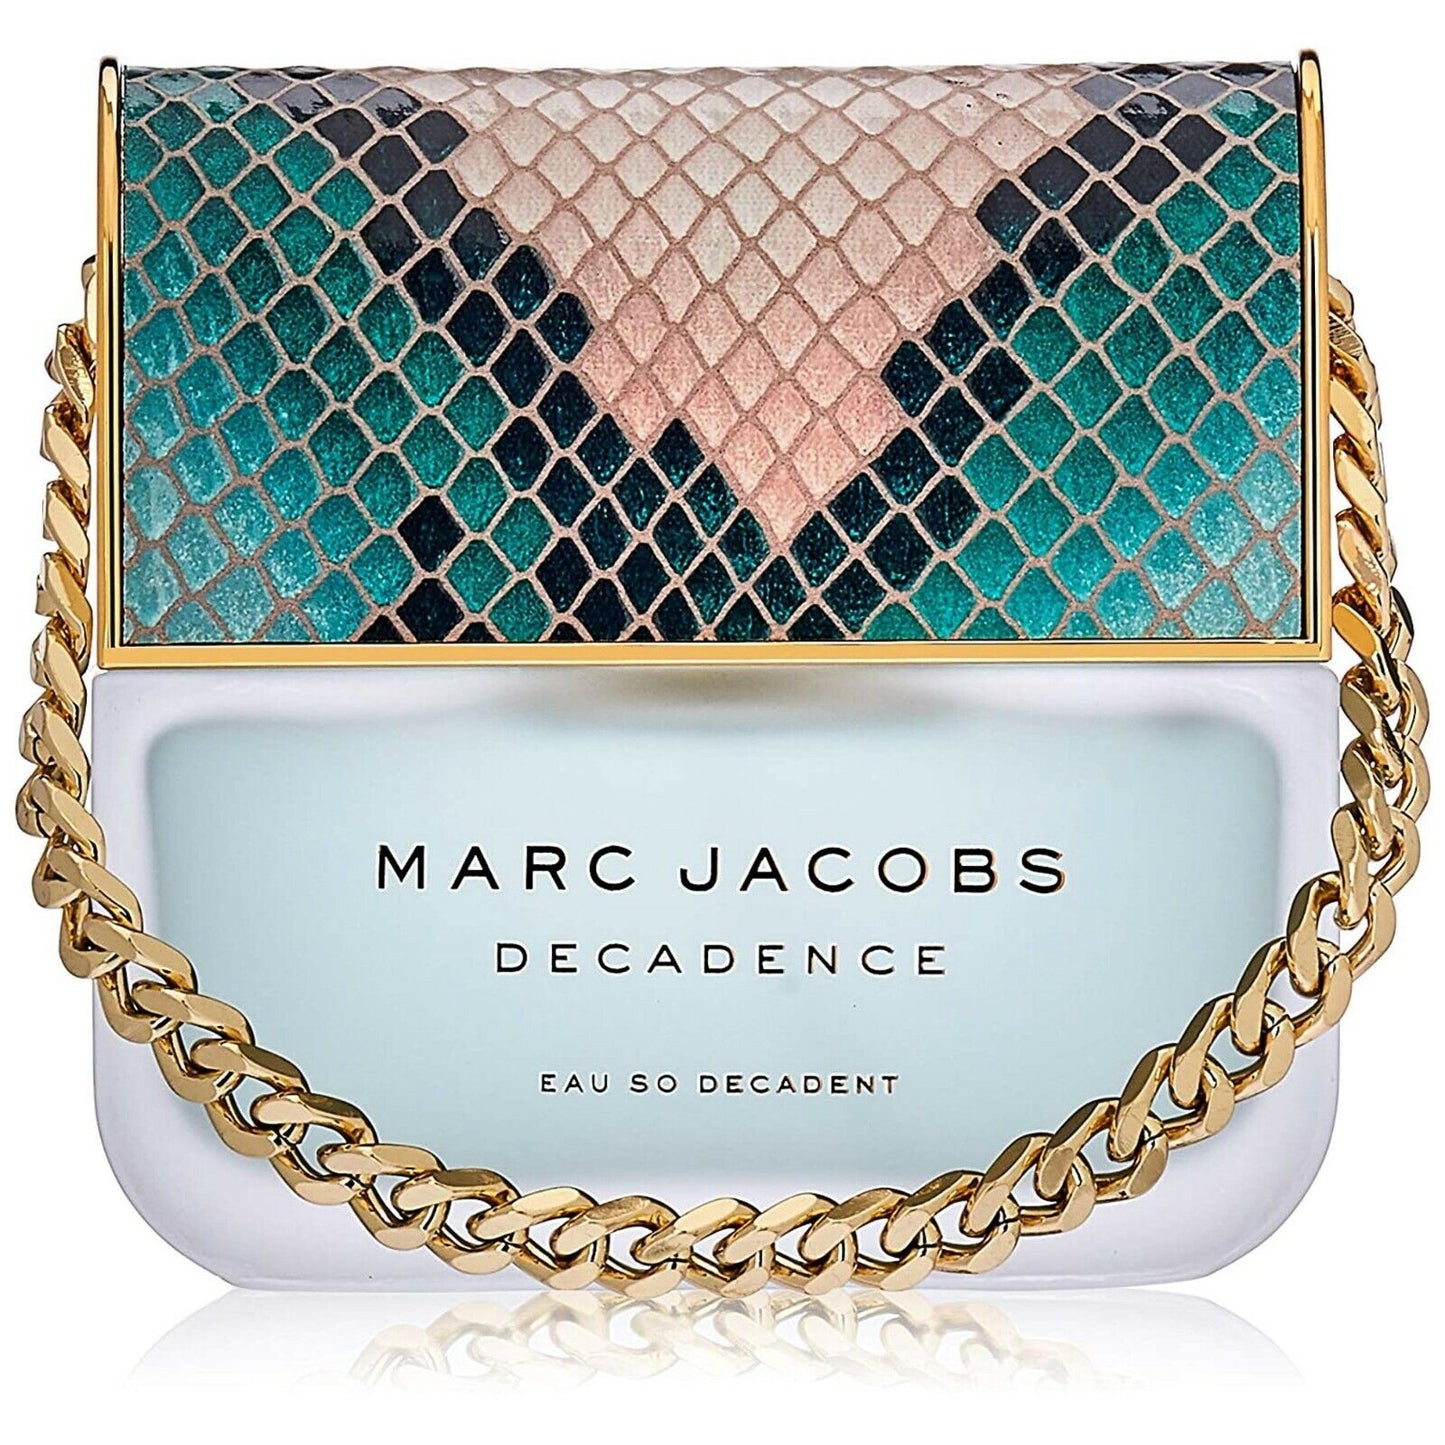 Marc Jacobs Decadence Eau So Decadent by Marc Jacobs Edt Spray 3.4 oz 100 ml